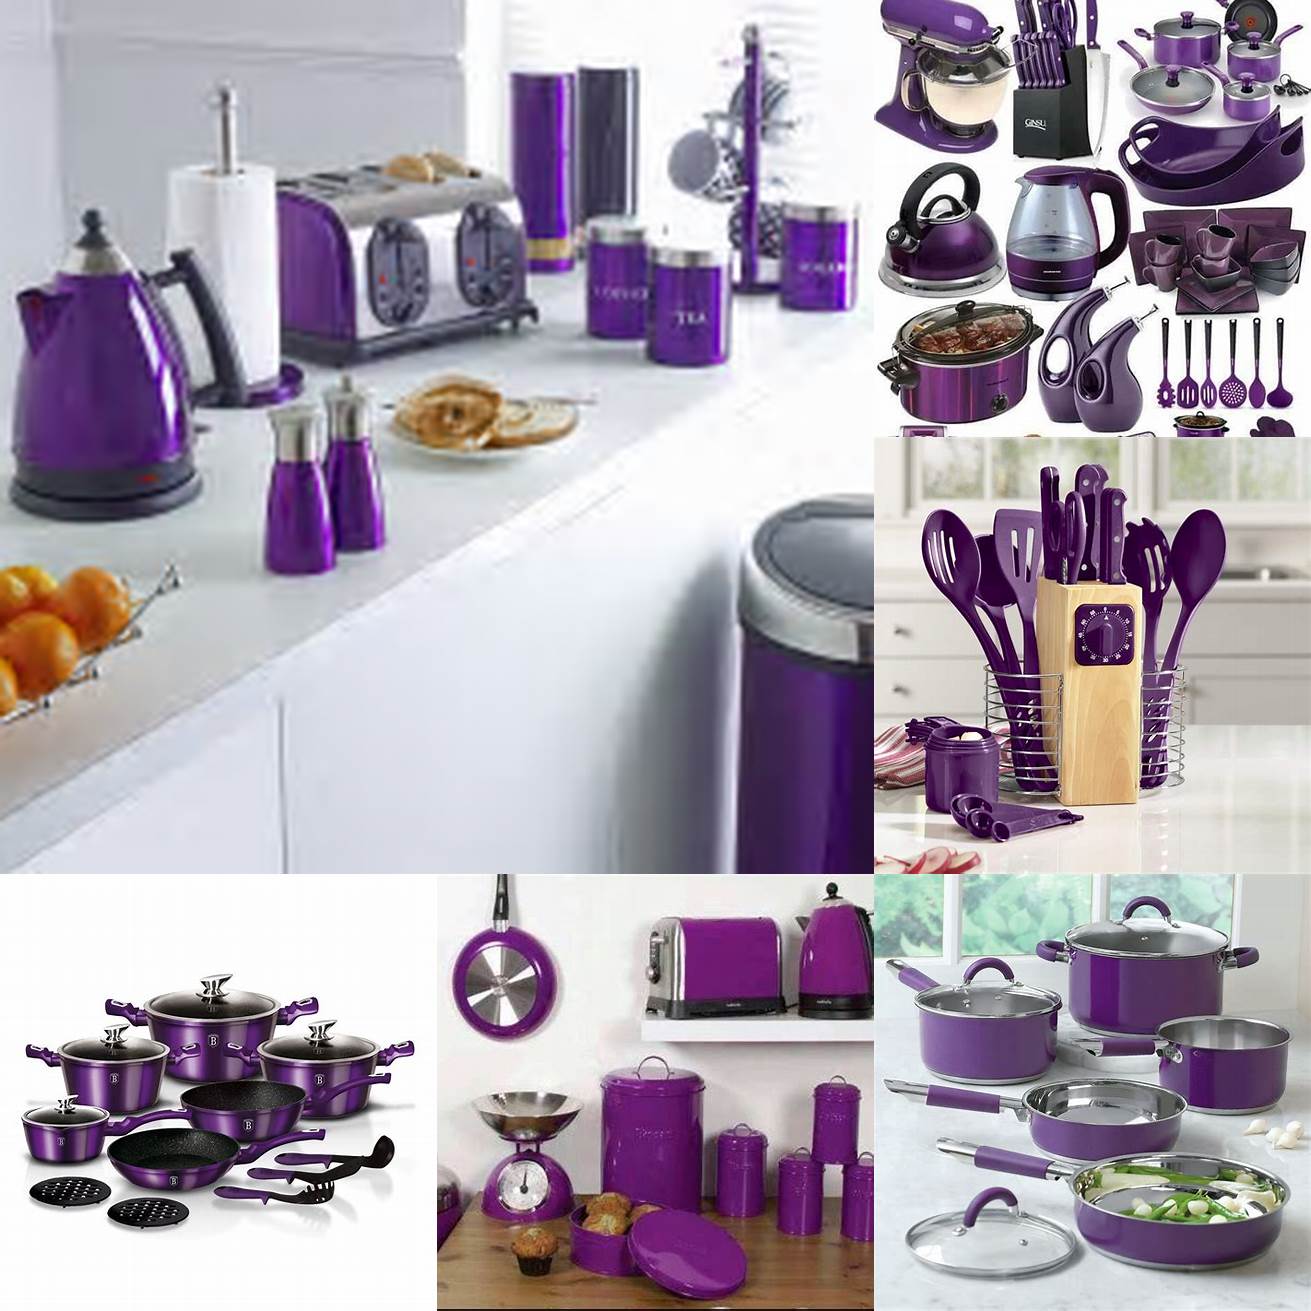 Purple kitchen accessories